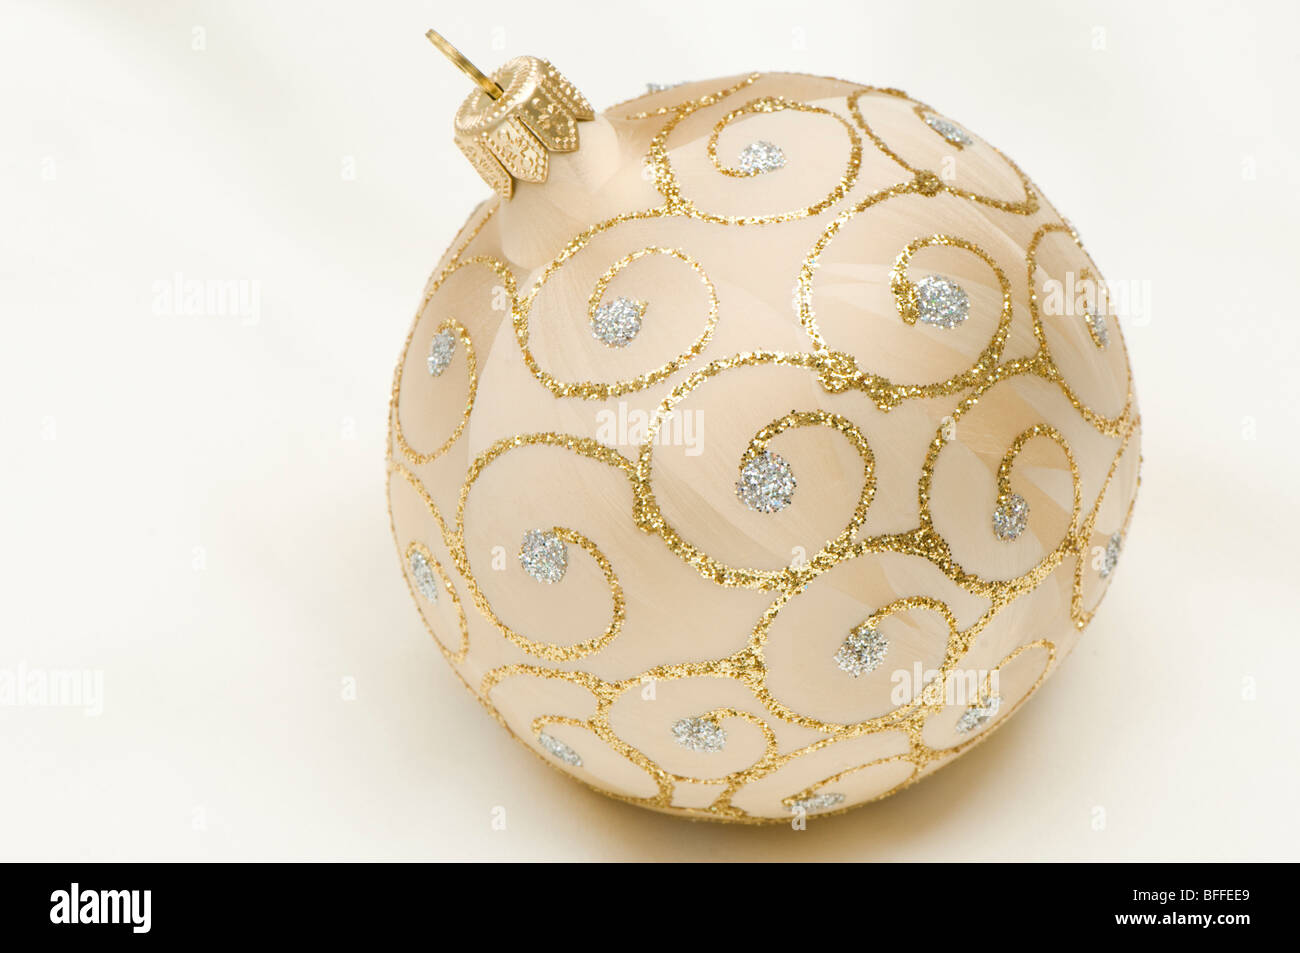 Boule de Noël d'or et d'argent contre un arrière-plan blanc crème Banque D'Images